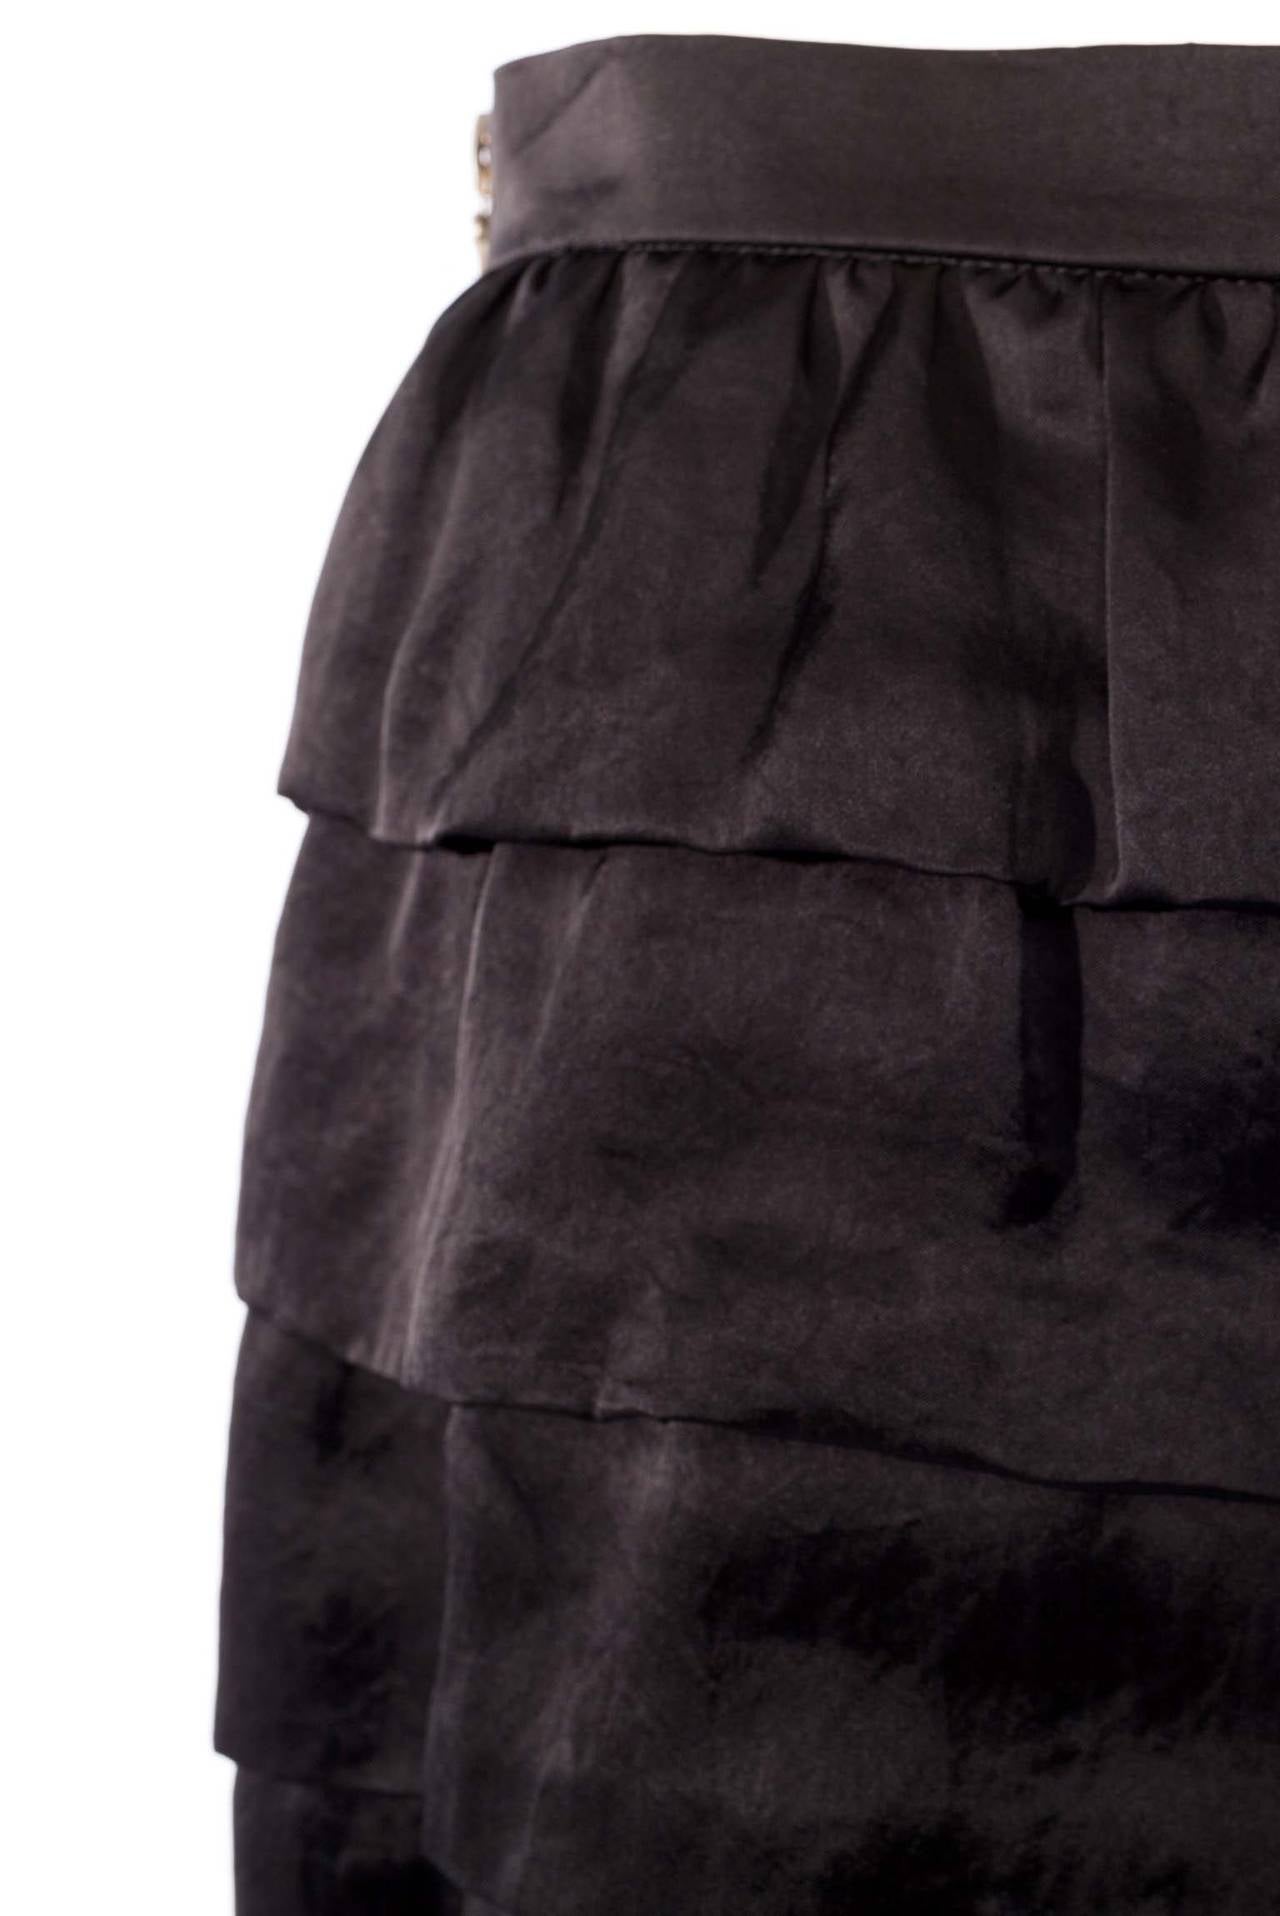 Women's Lanvin black tired skirt from winter 2006